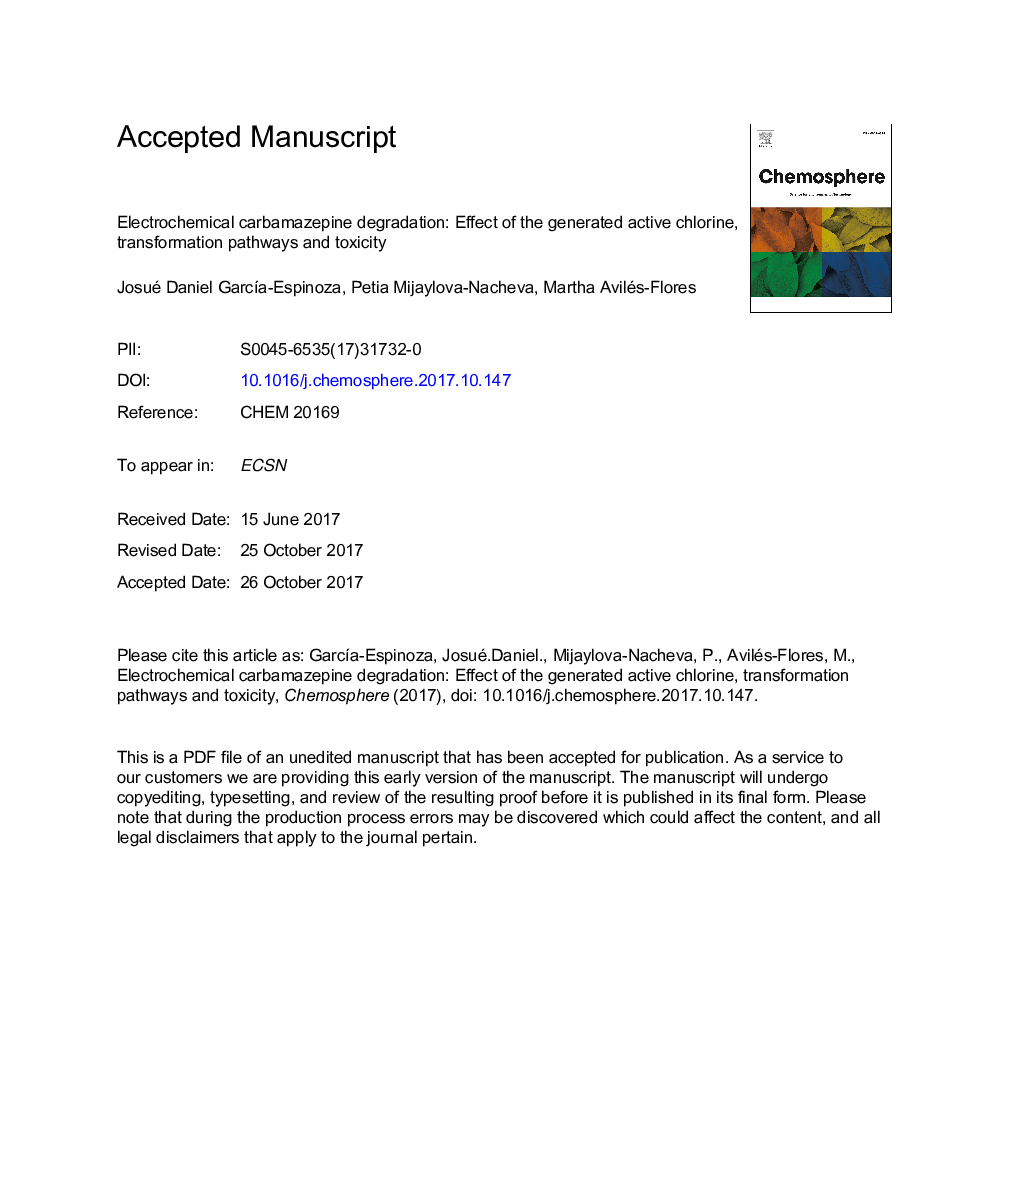 تخریب الکتروشیمیایی کاربامازپین: اثر کلر فعال فعال، مسیرهای انتقال و سمیت 